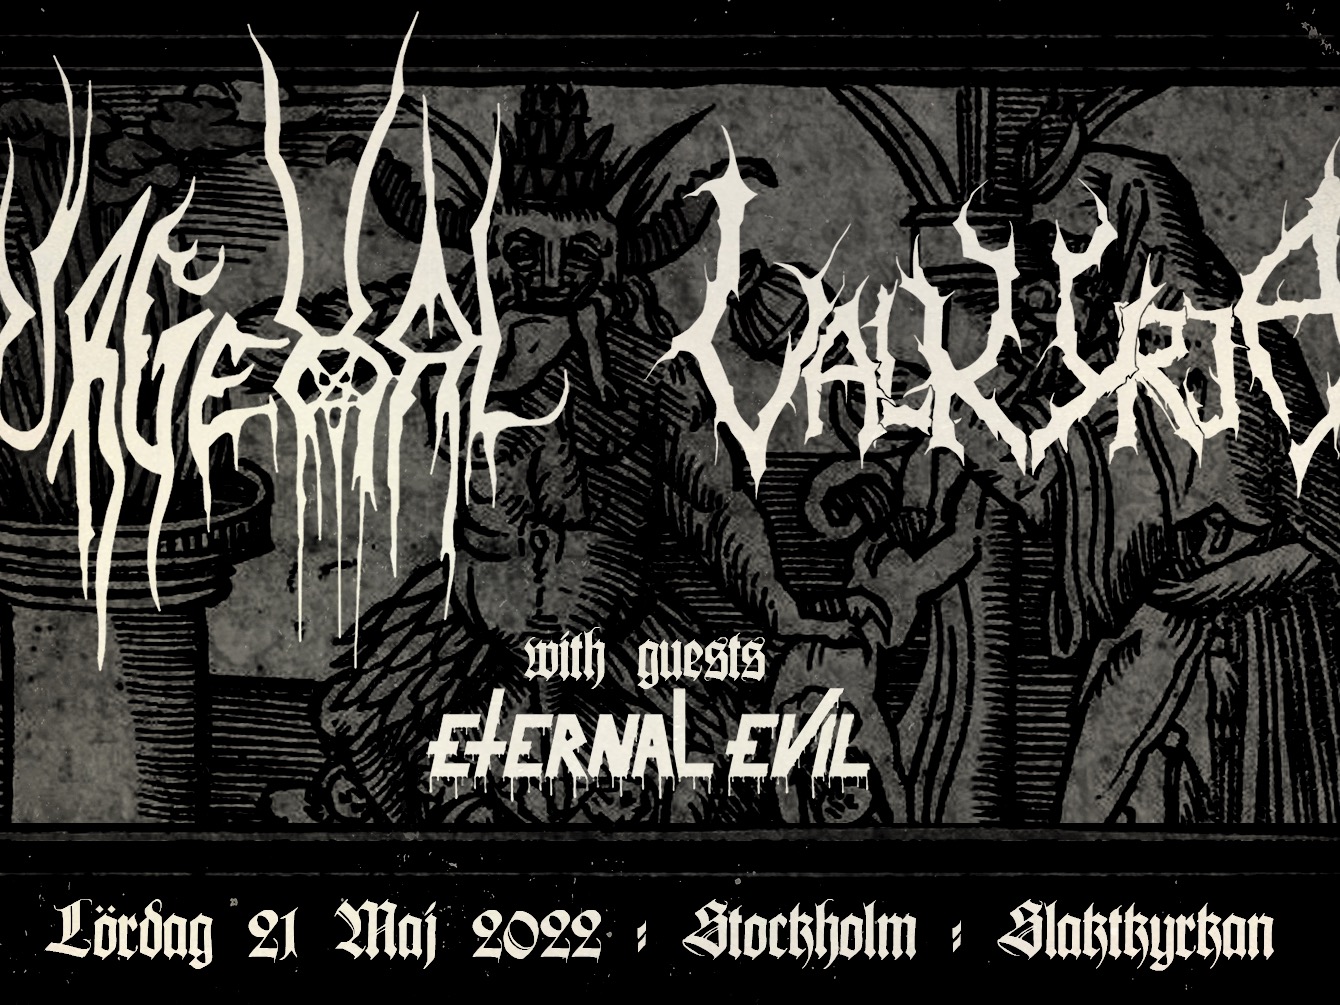 Urgehal, Valkyrja & Eternal Evil